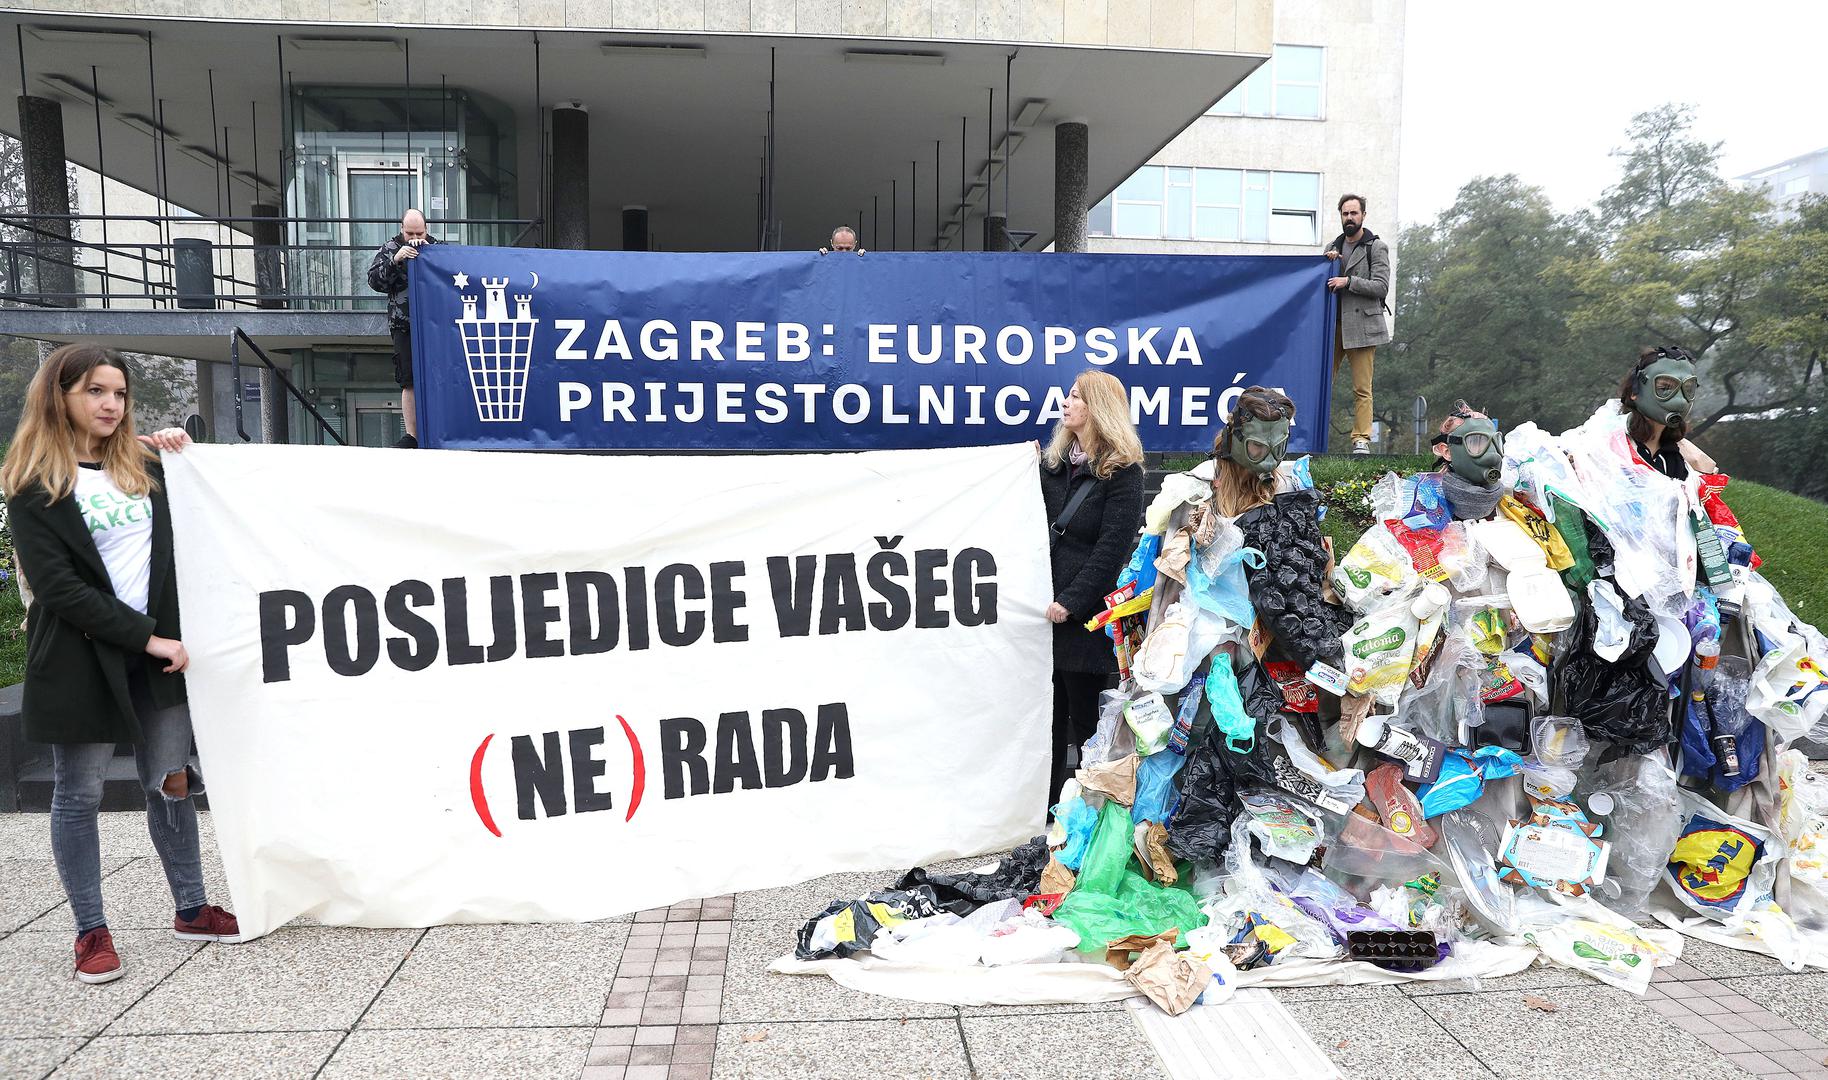 Na transparentima je pisalo "Zagreb: europska prijestolnica smeća" i "Posljedice vašeg (ne)rada".